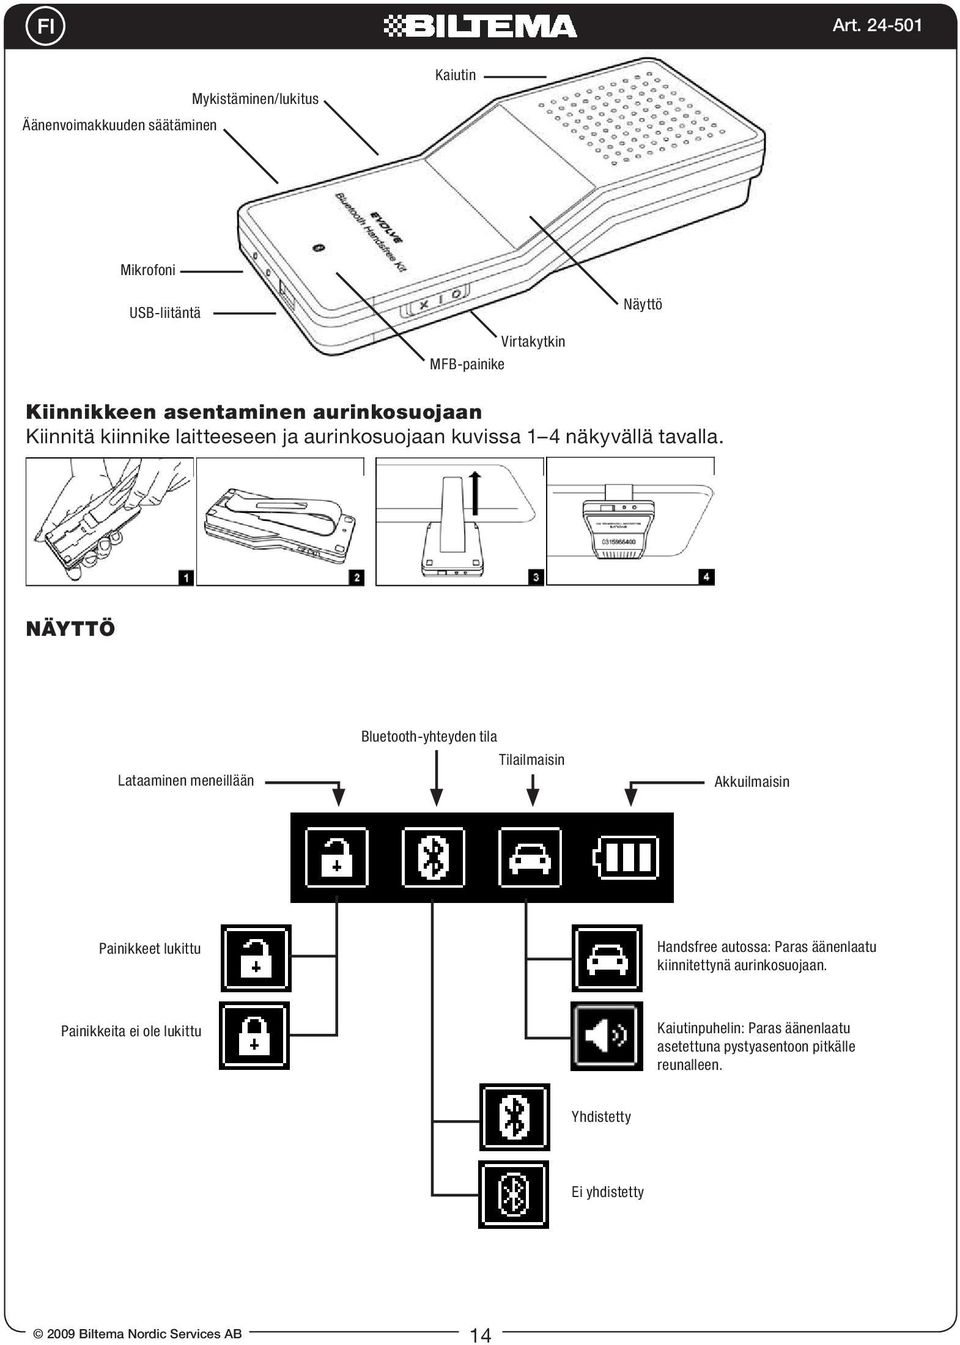 Näyttö Lataaminen meneillään Bluetooth-yhteyden tila Tilailmaisin Akkuilmaisin Painikkeet lukittu Handsfree autossa: Paras